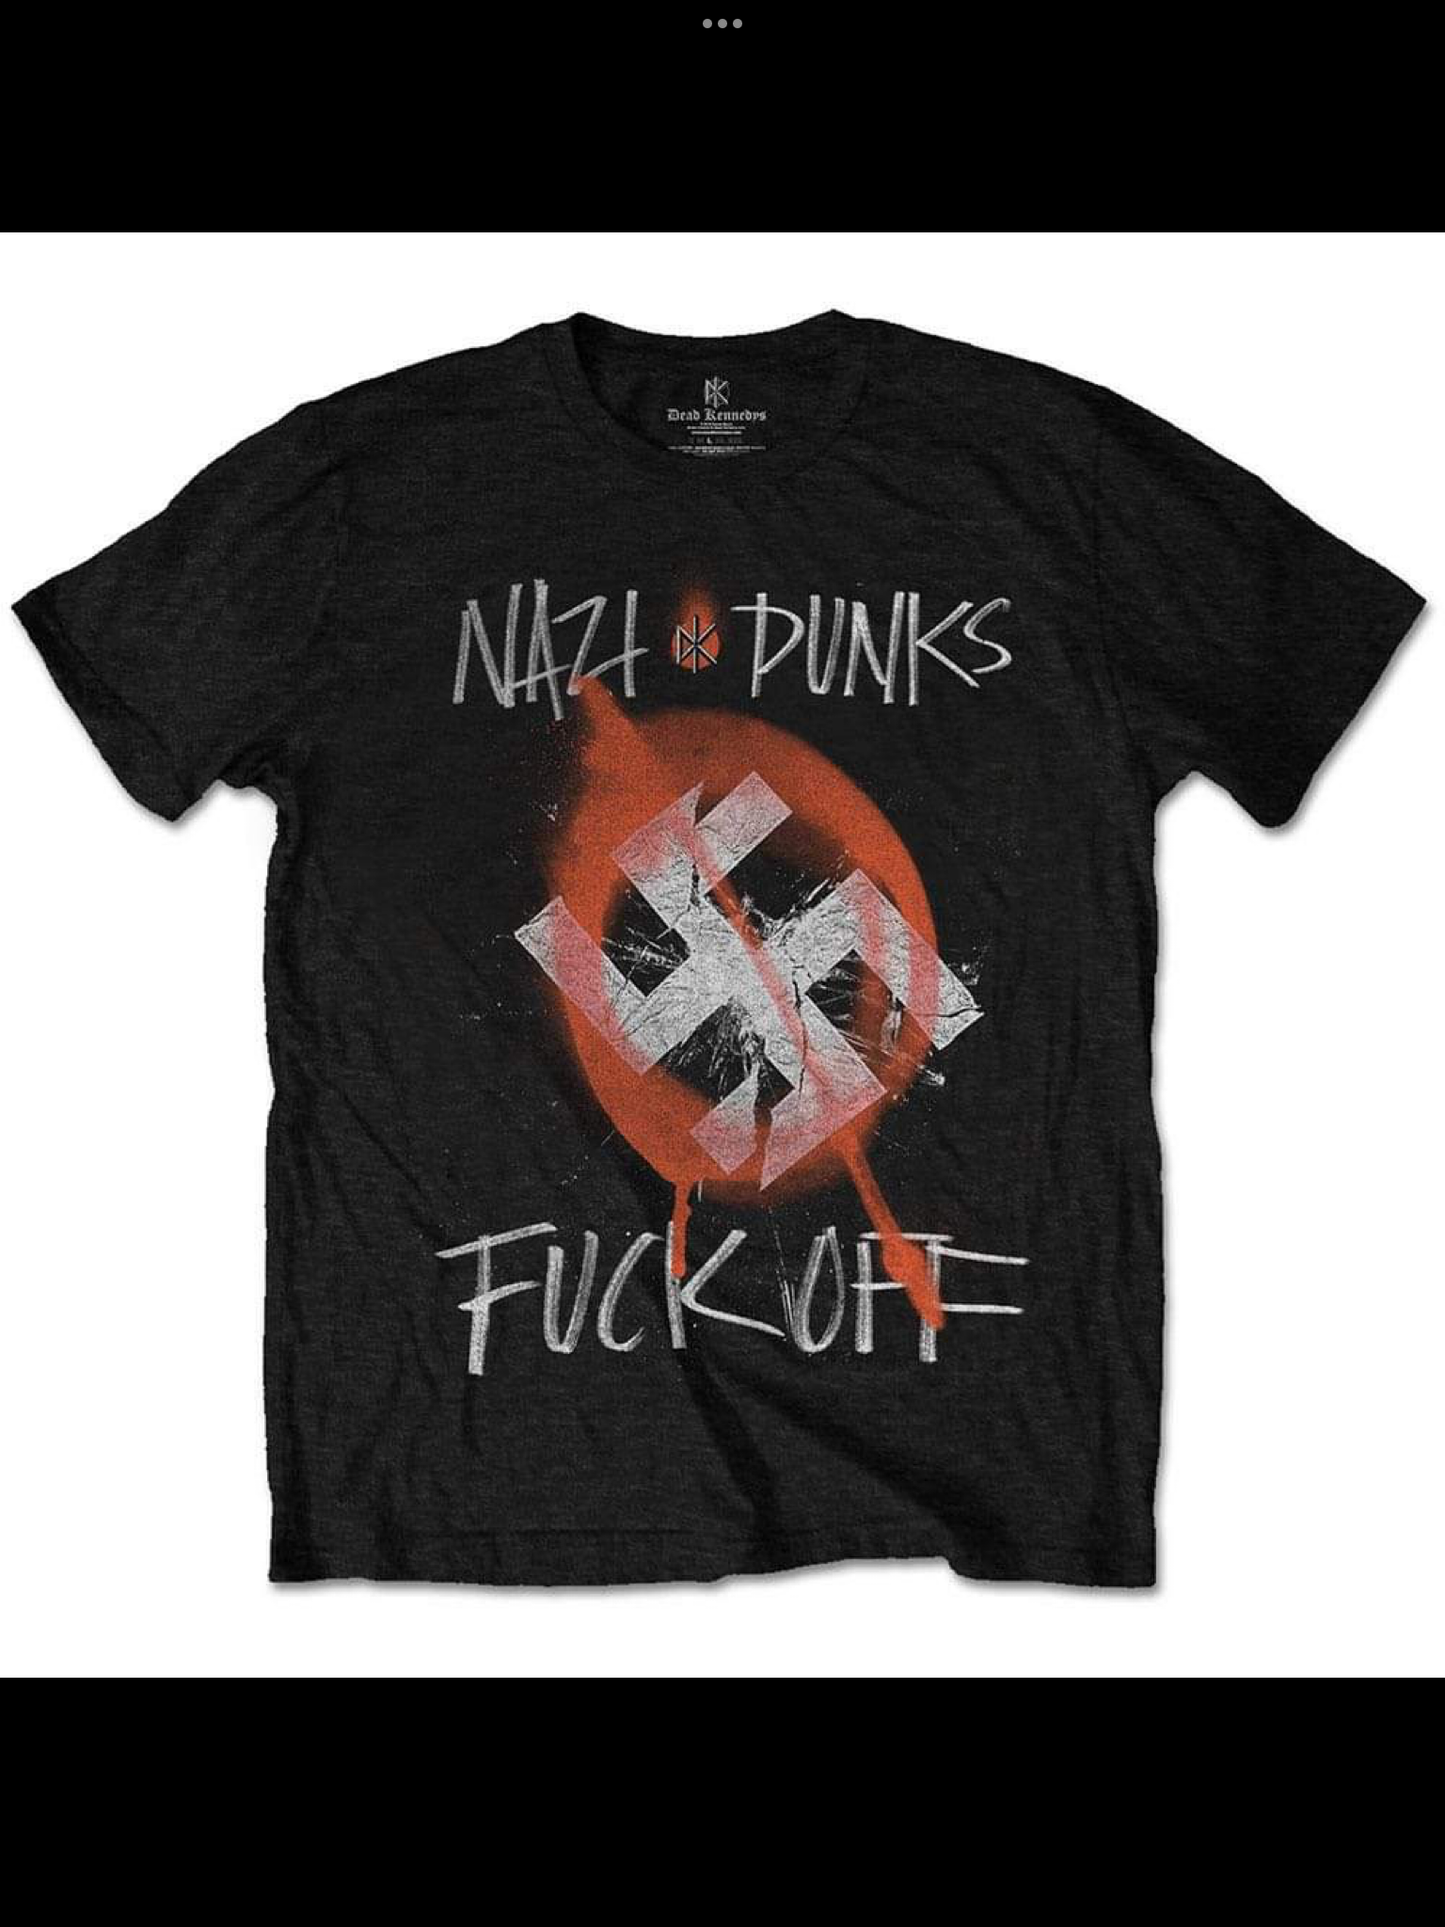 Dead Kennedys - Nazi Punks Fuck Off - T-Shirt Unisex Officiell Merch